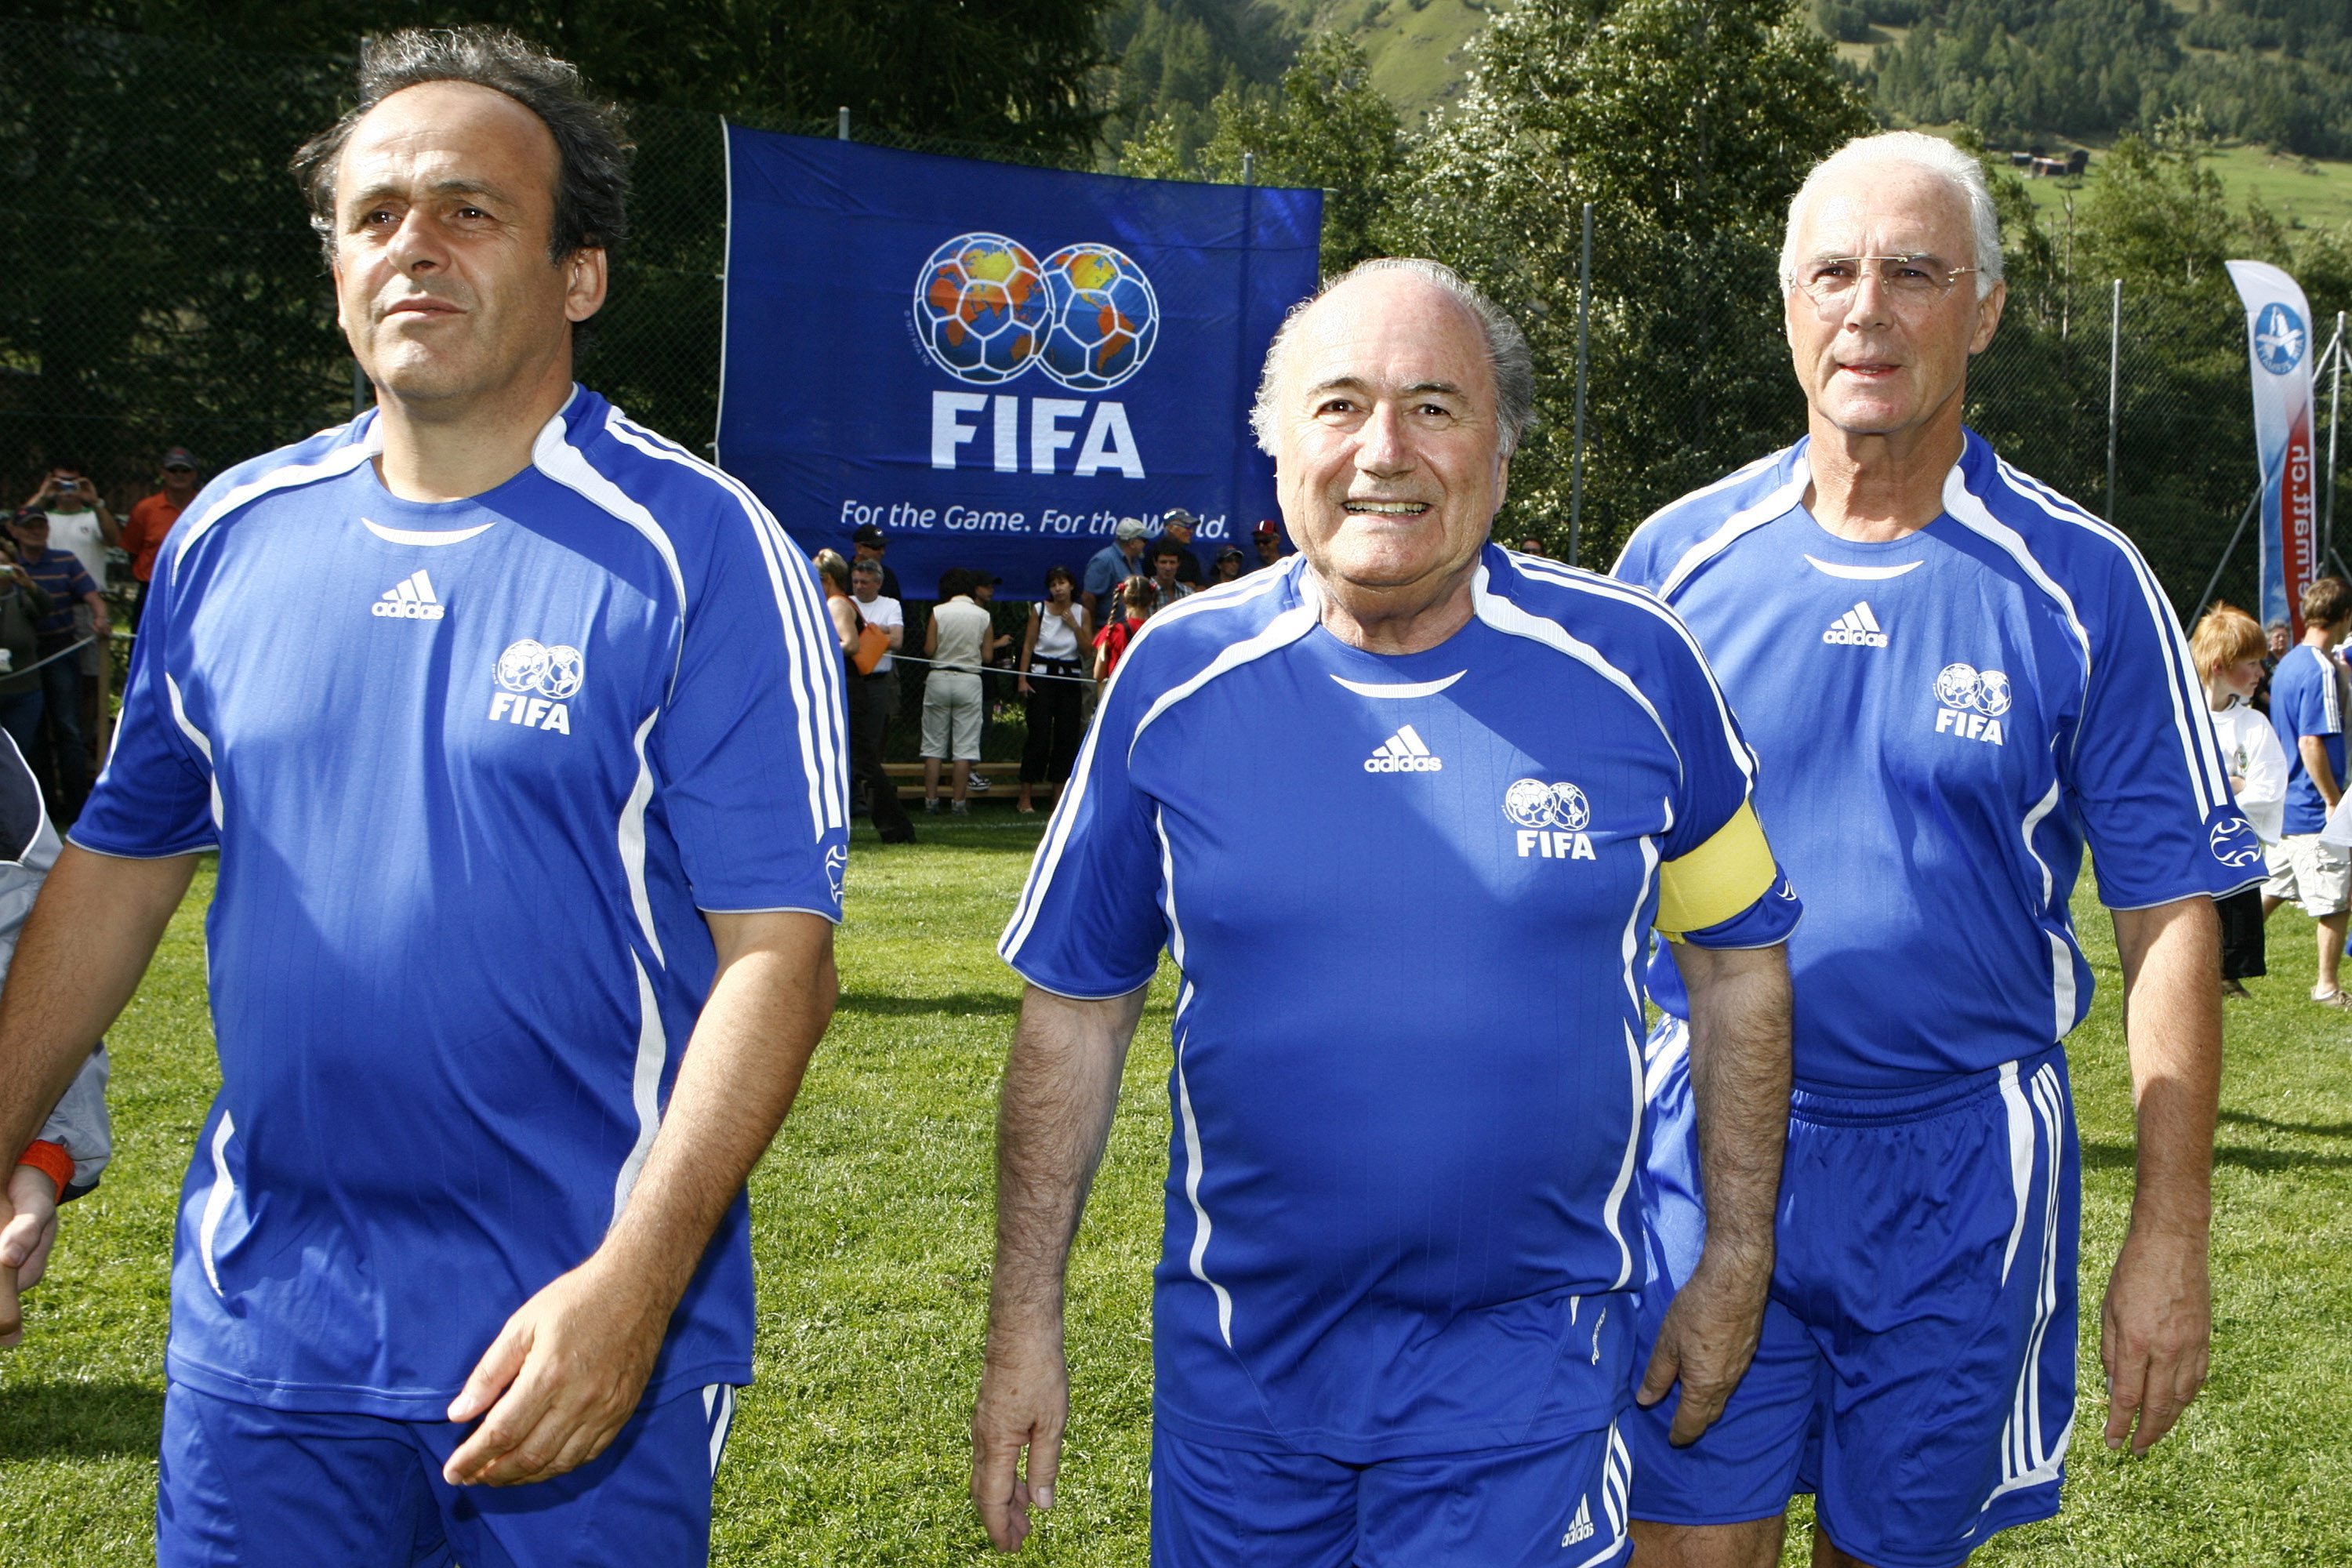 Fotboll, fifa, Skandal, Mutor, Korruption, Sepp Blatter